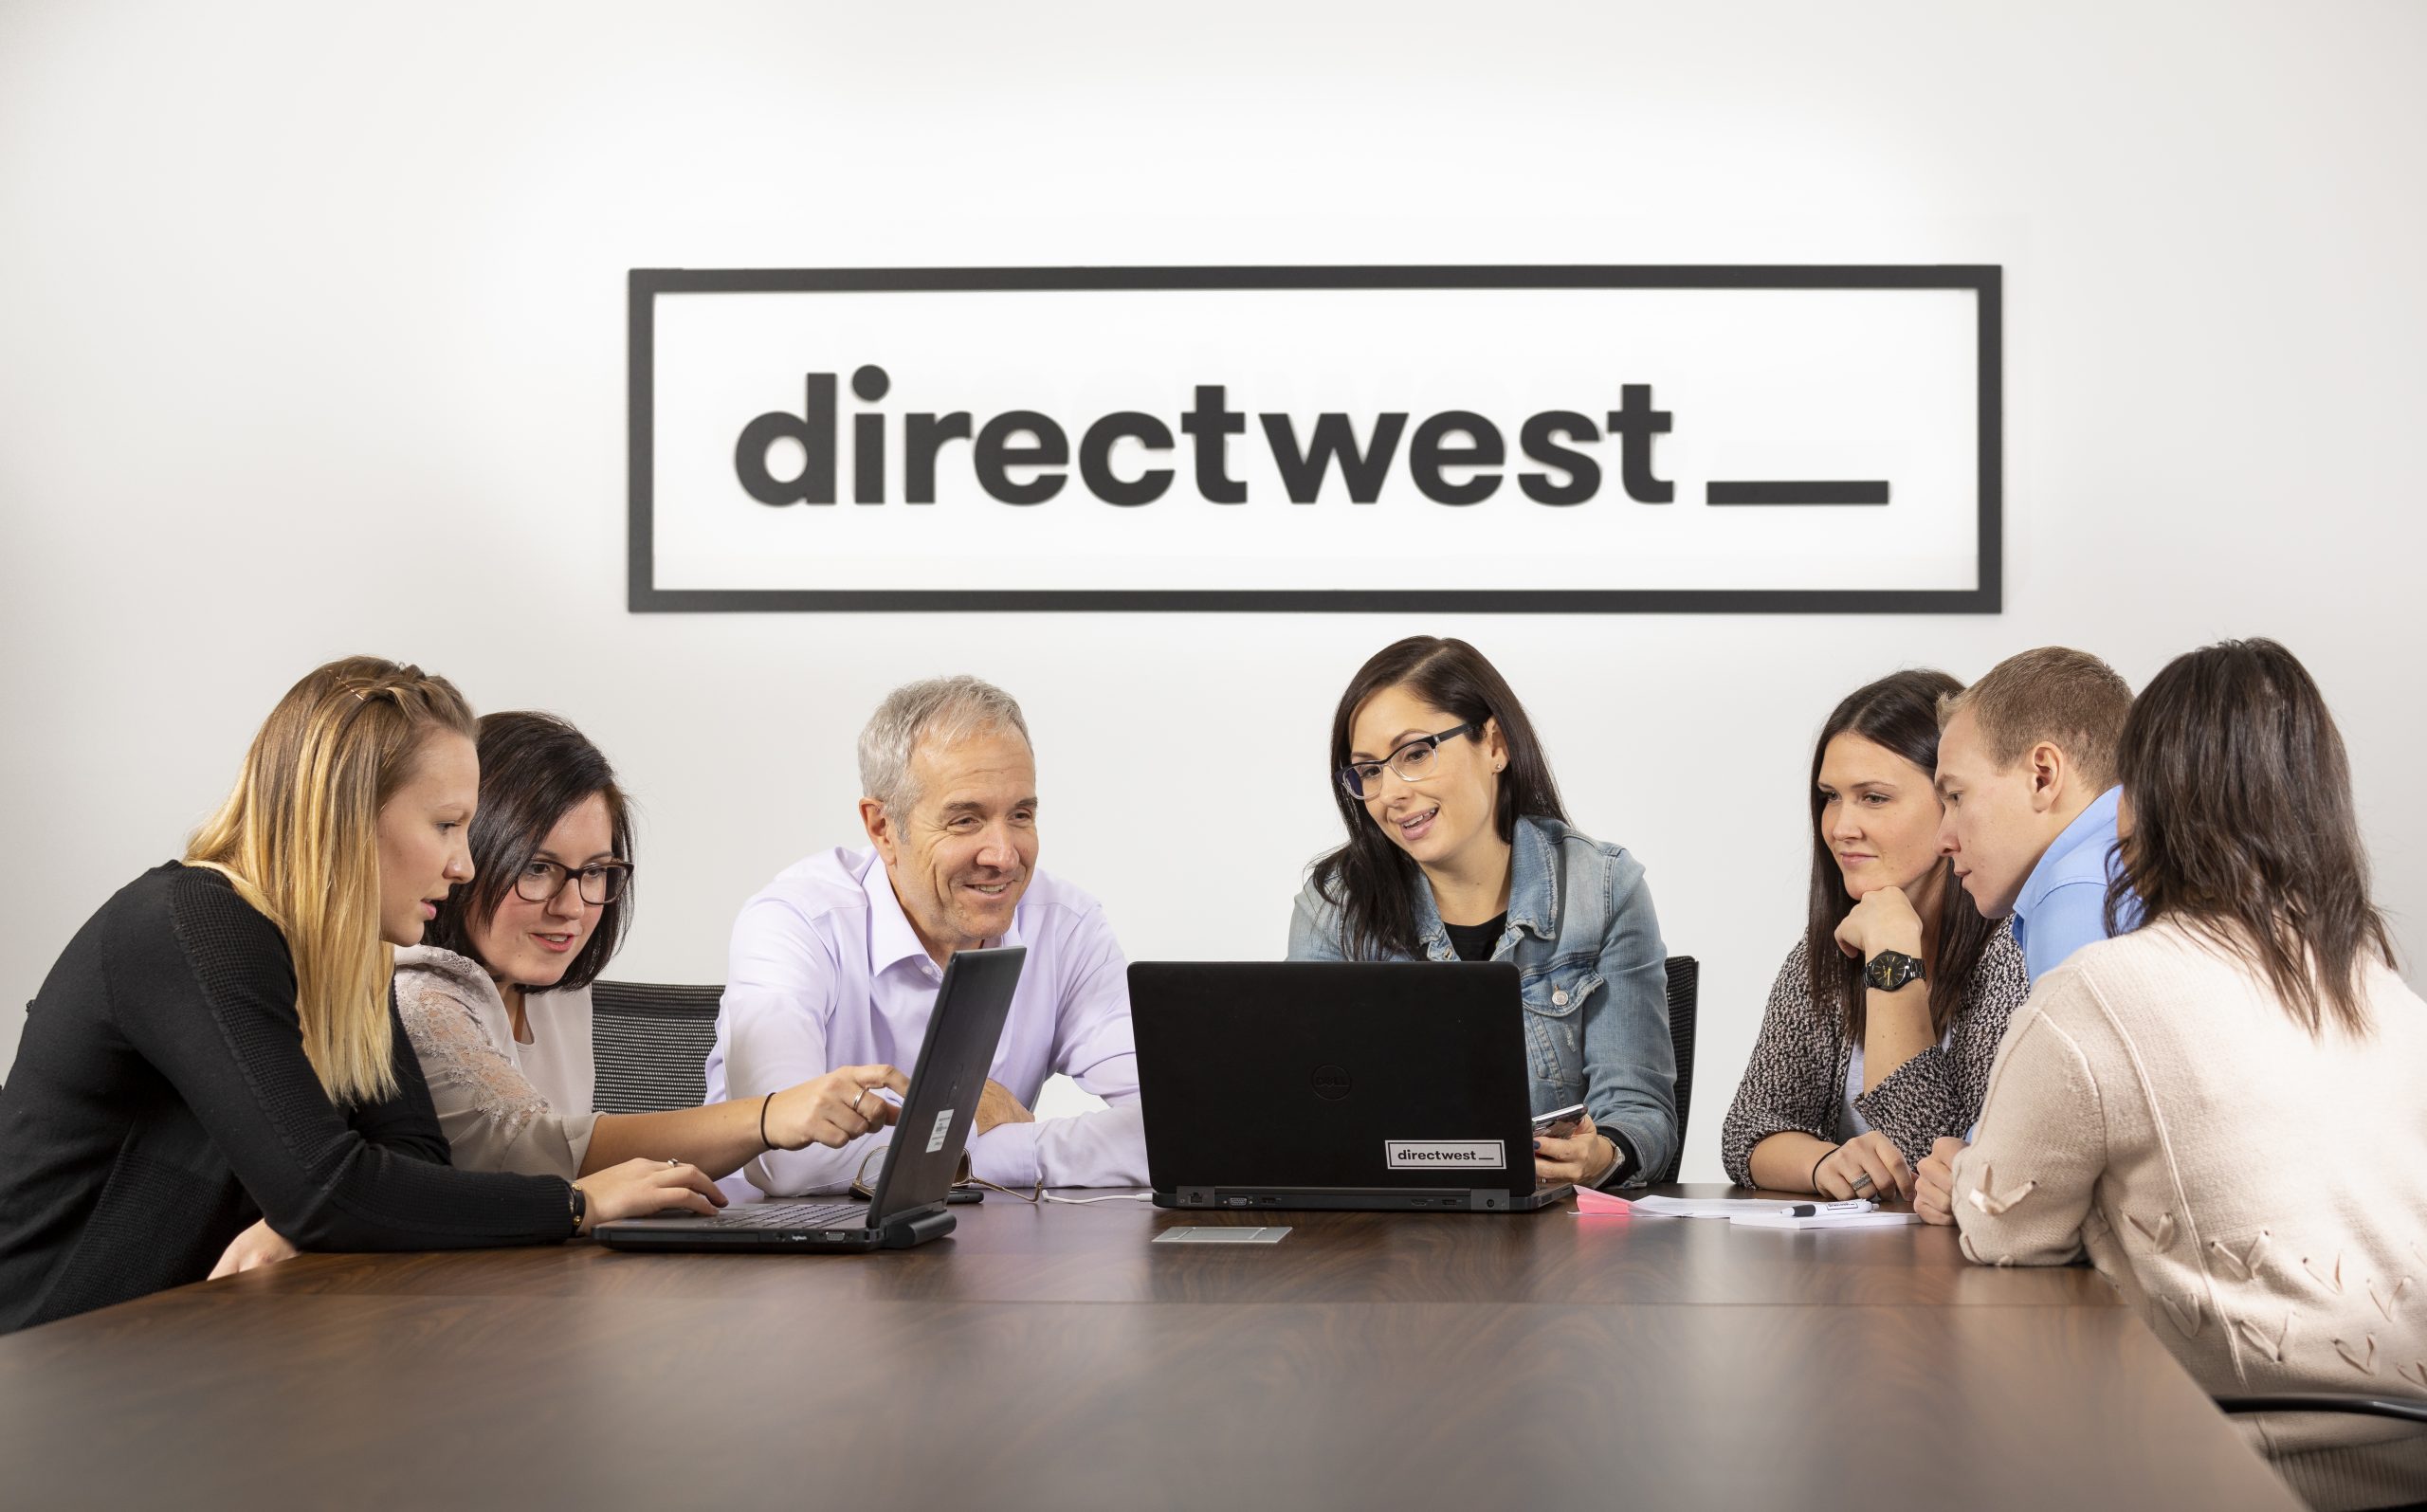 directwest team meeting